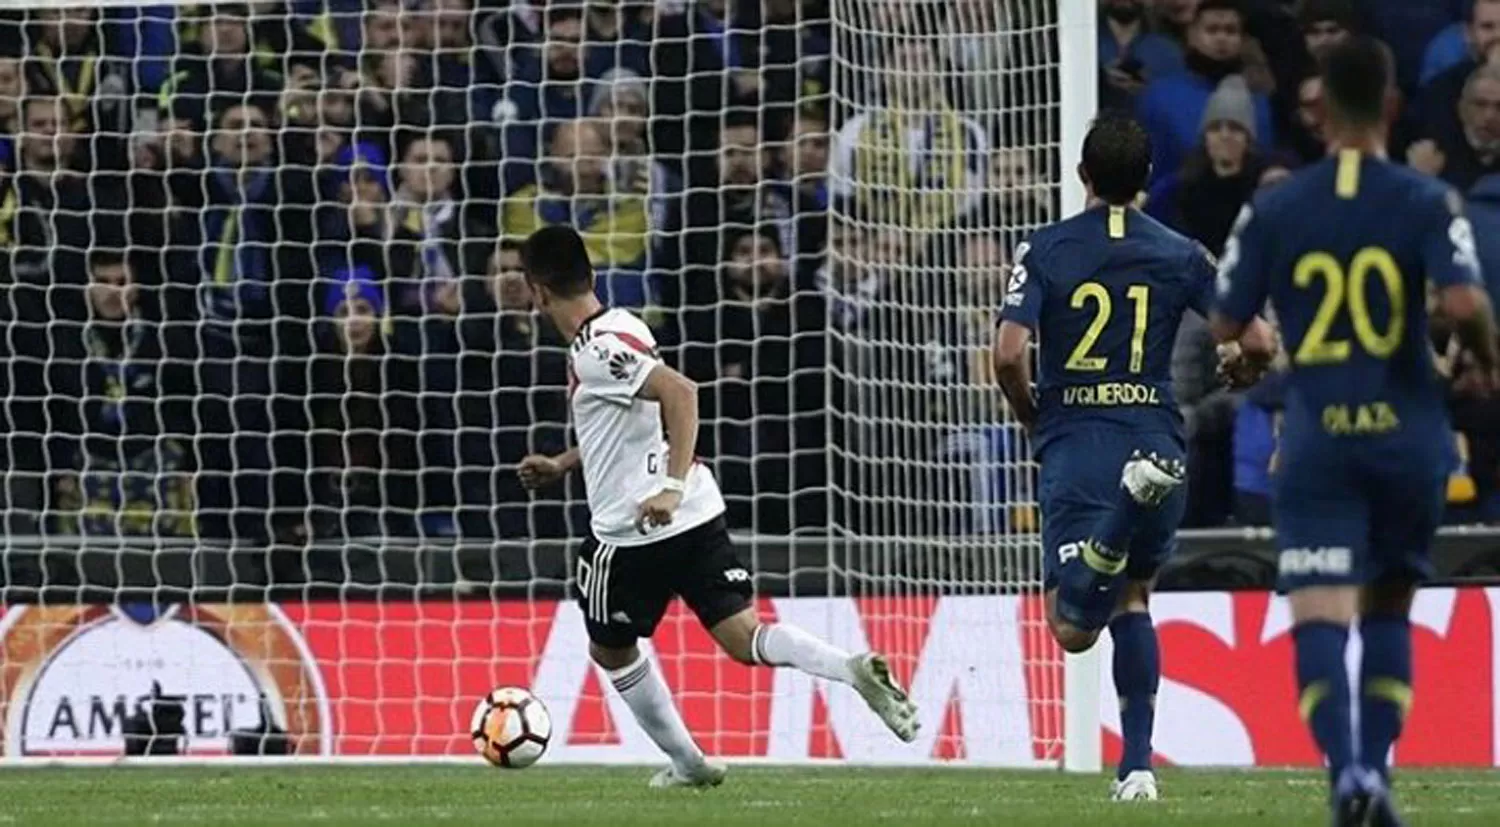 INOLVIDABLE. El gol del Pity Martínez en la final ante Boca.